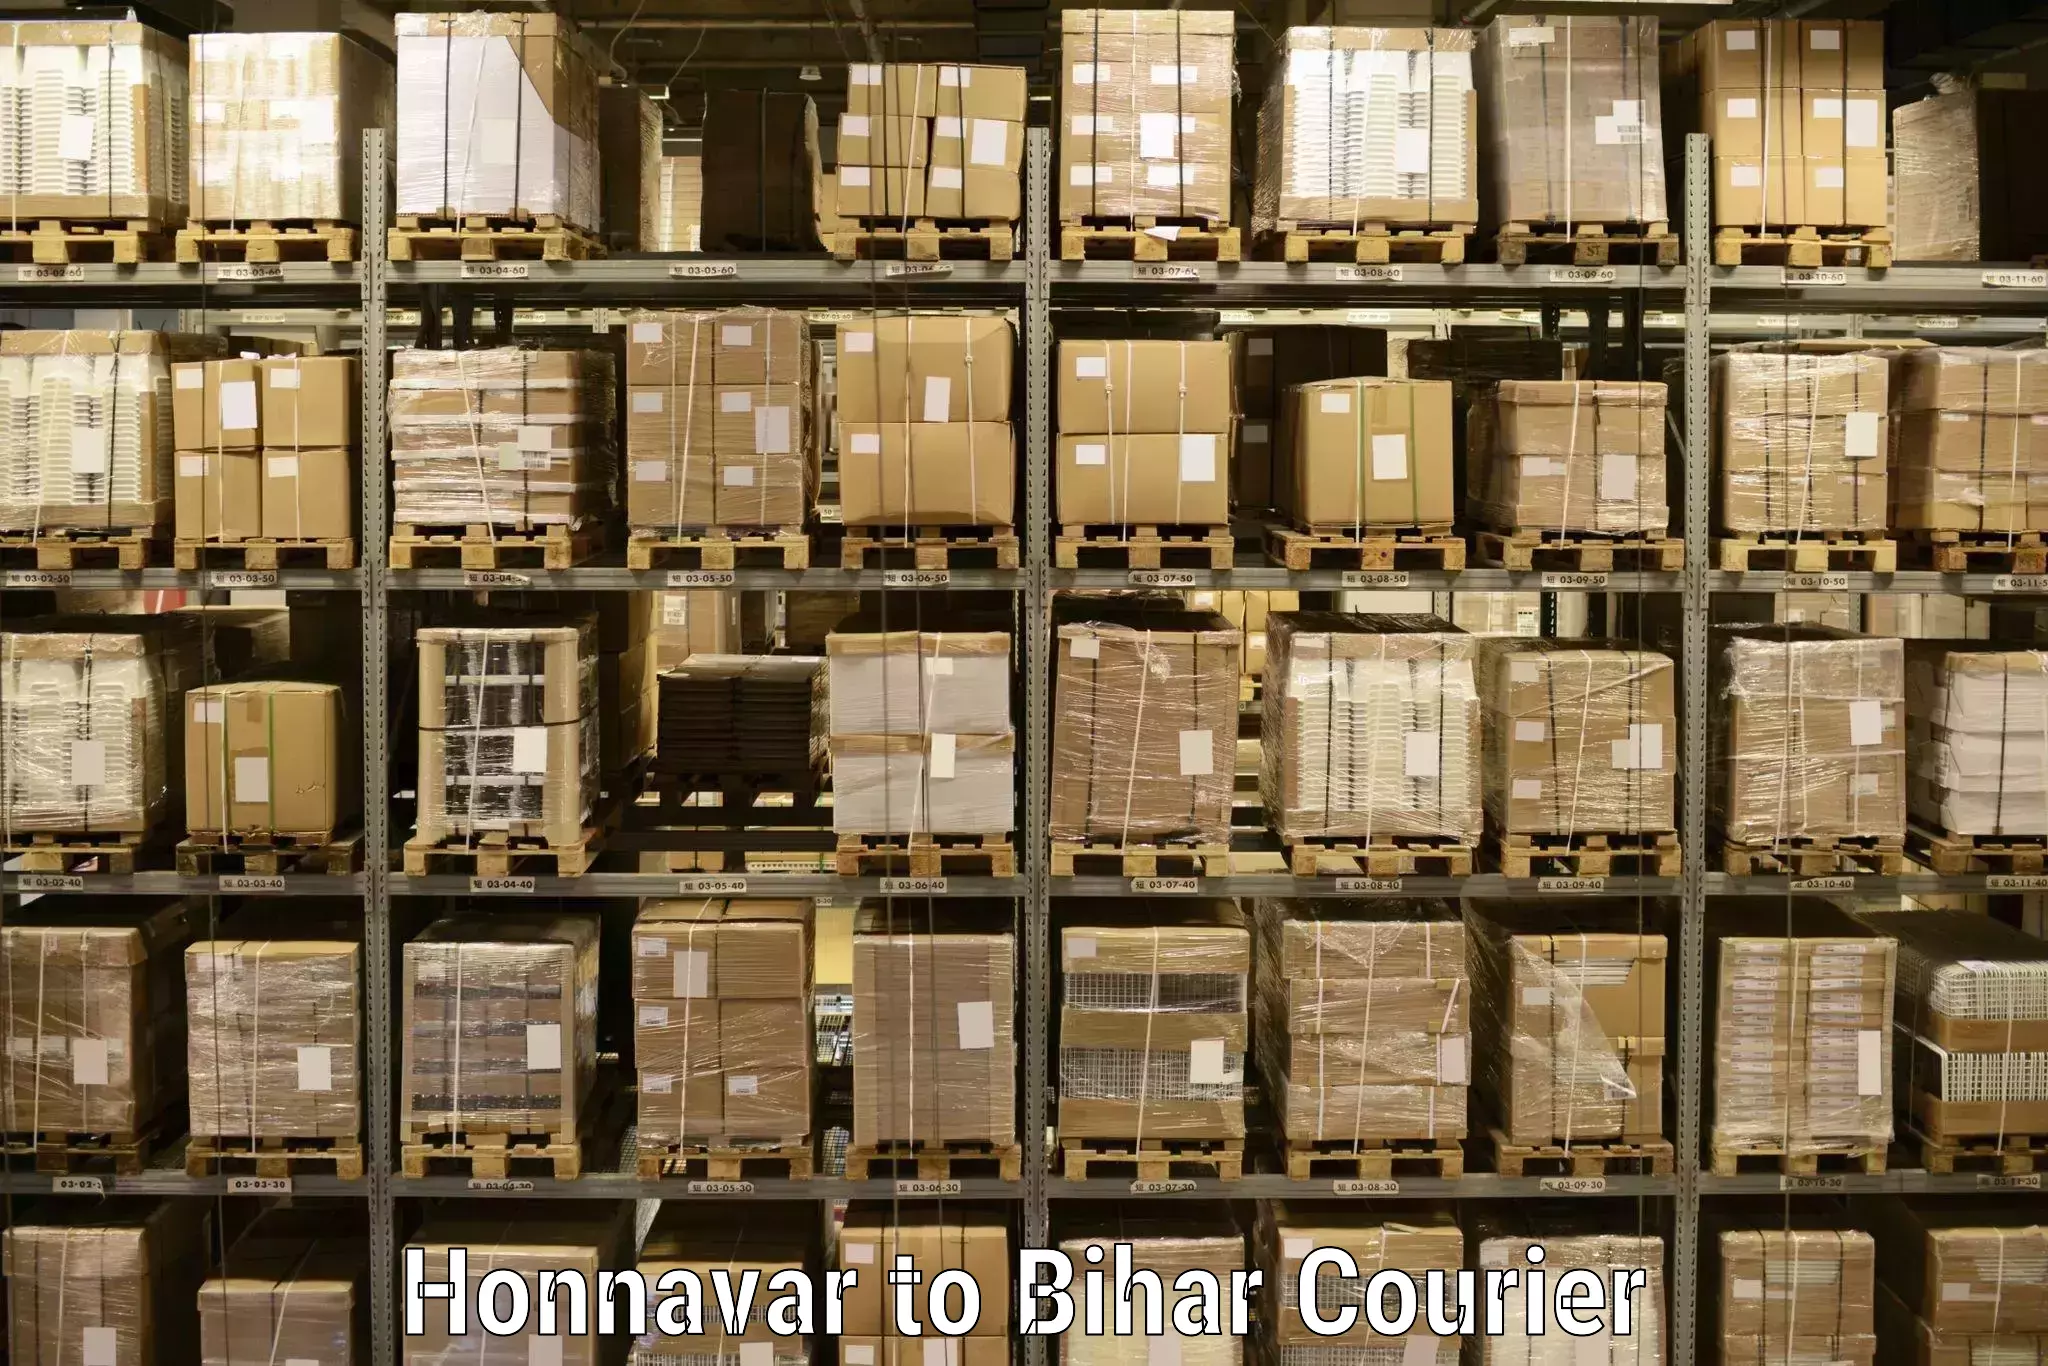 Efficient parcel service Honnavar to IIT Patna